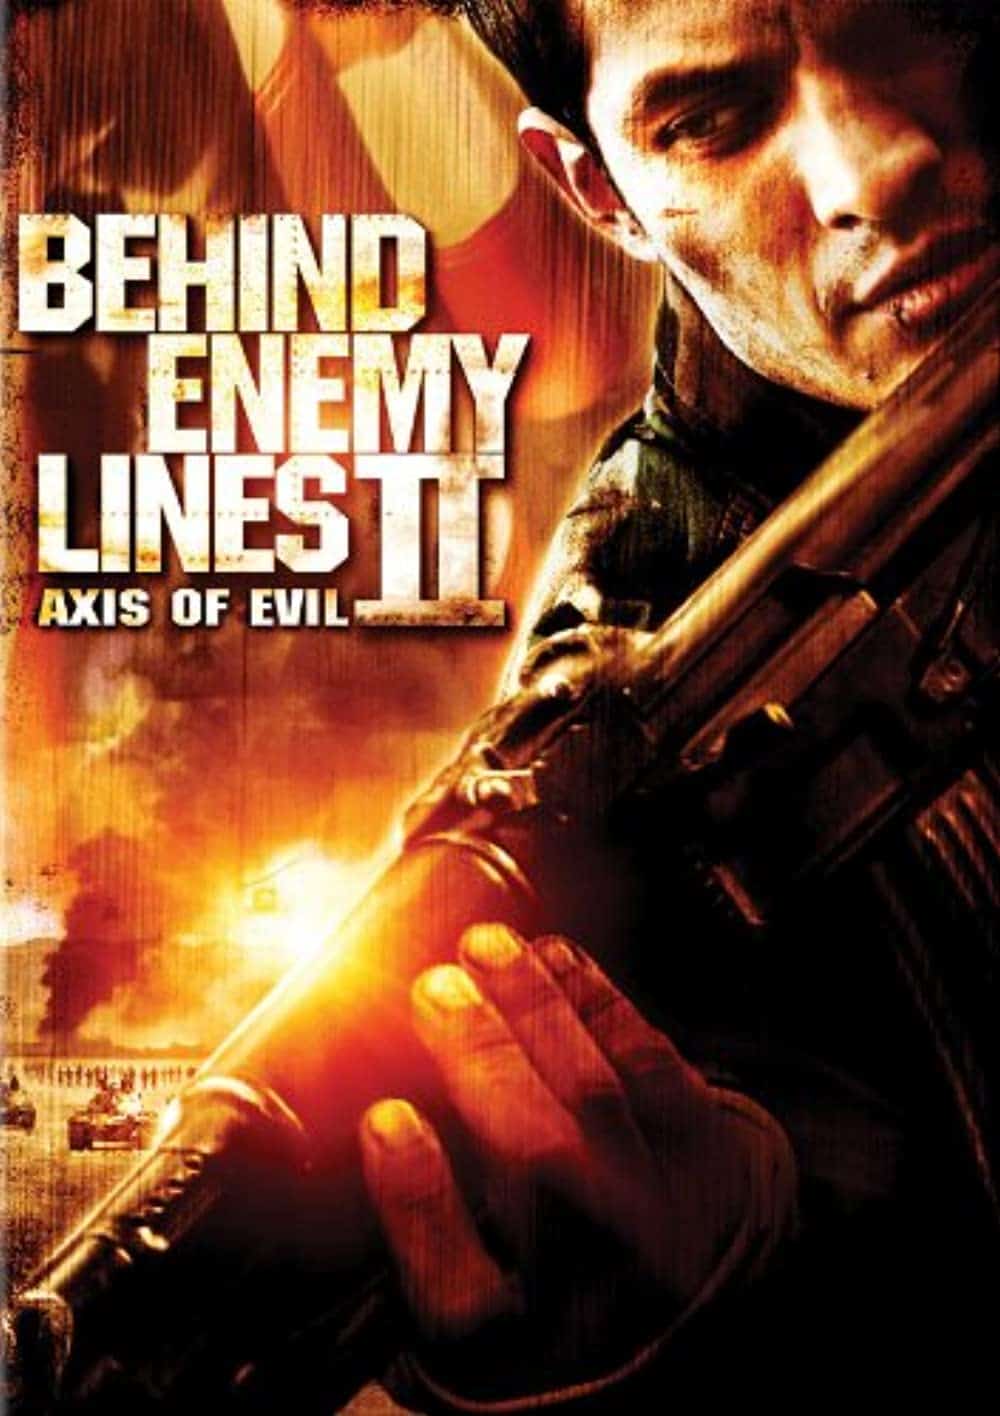 Behind Enemy Lines II Axis of Evil (2006)